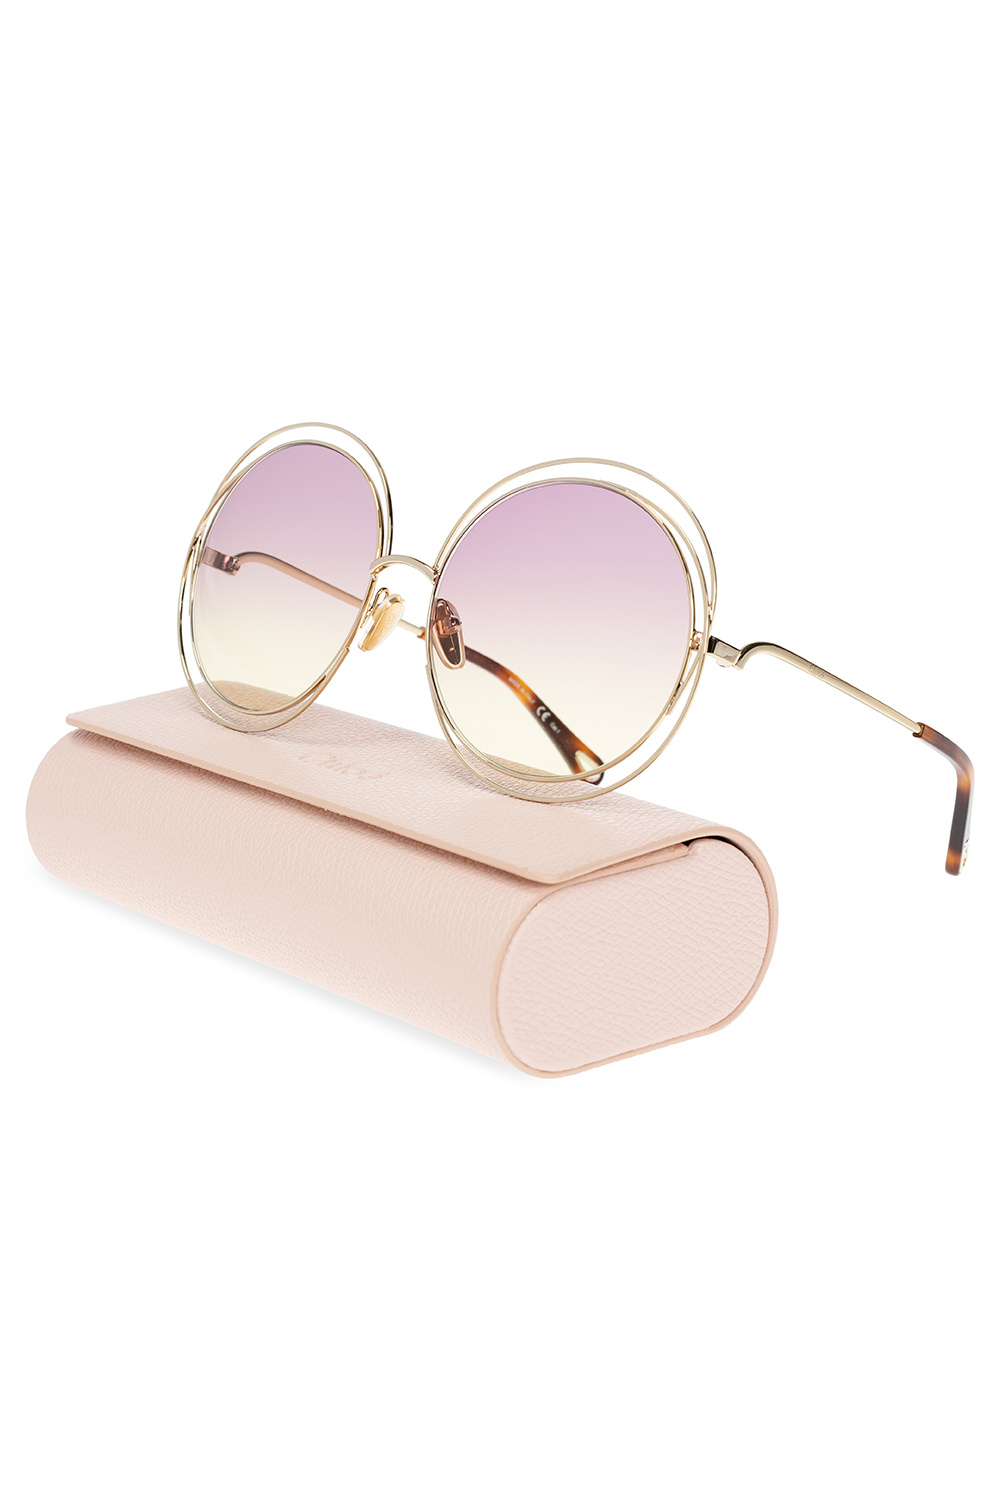 Chloé dior sunglasses with logo